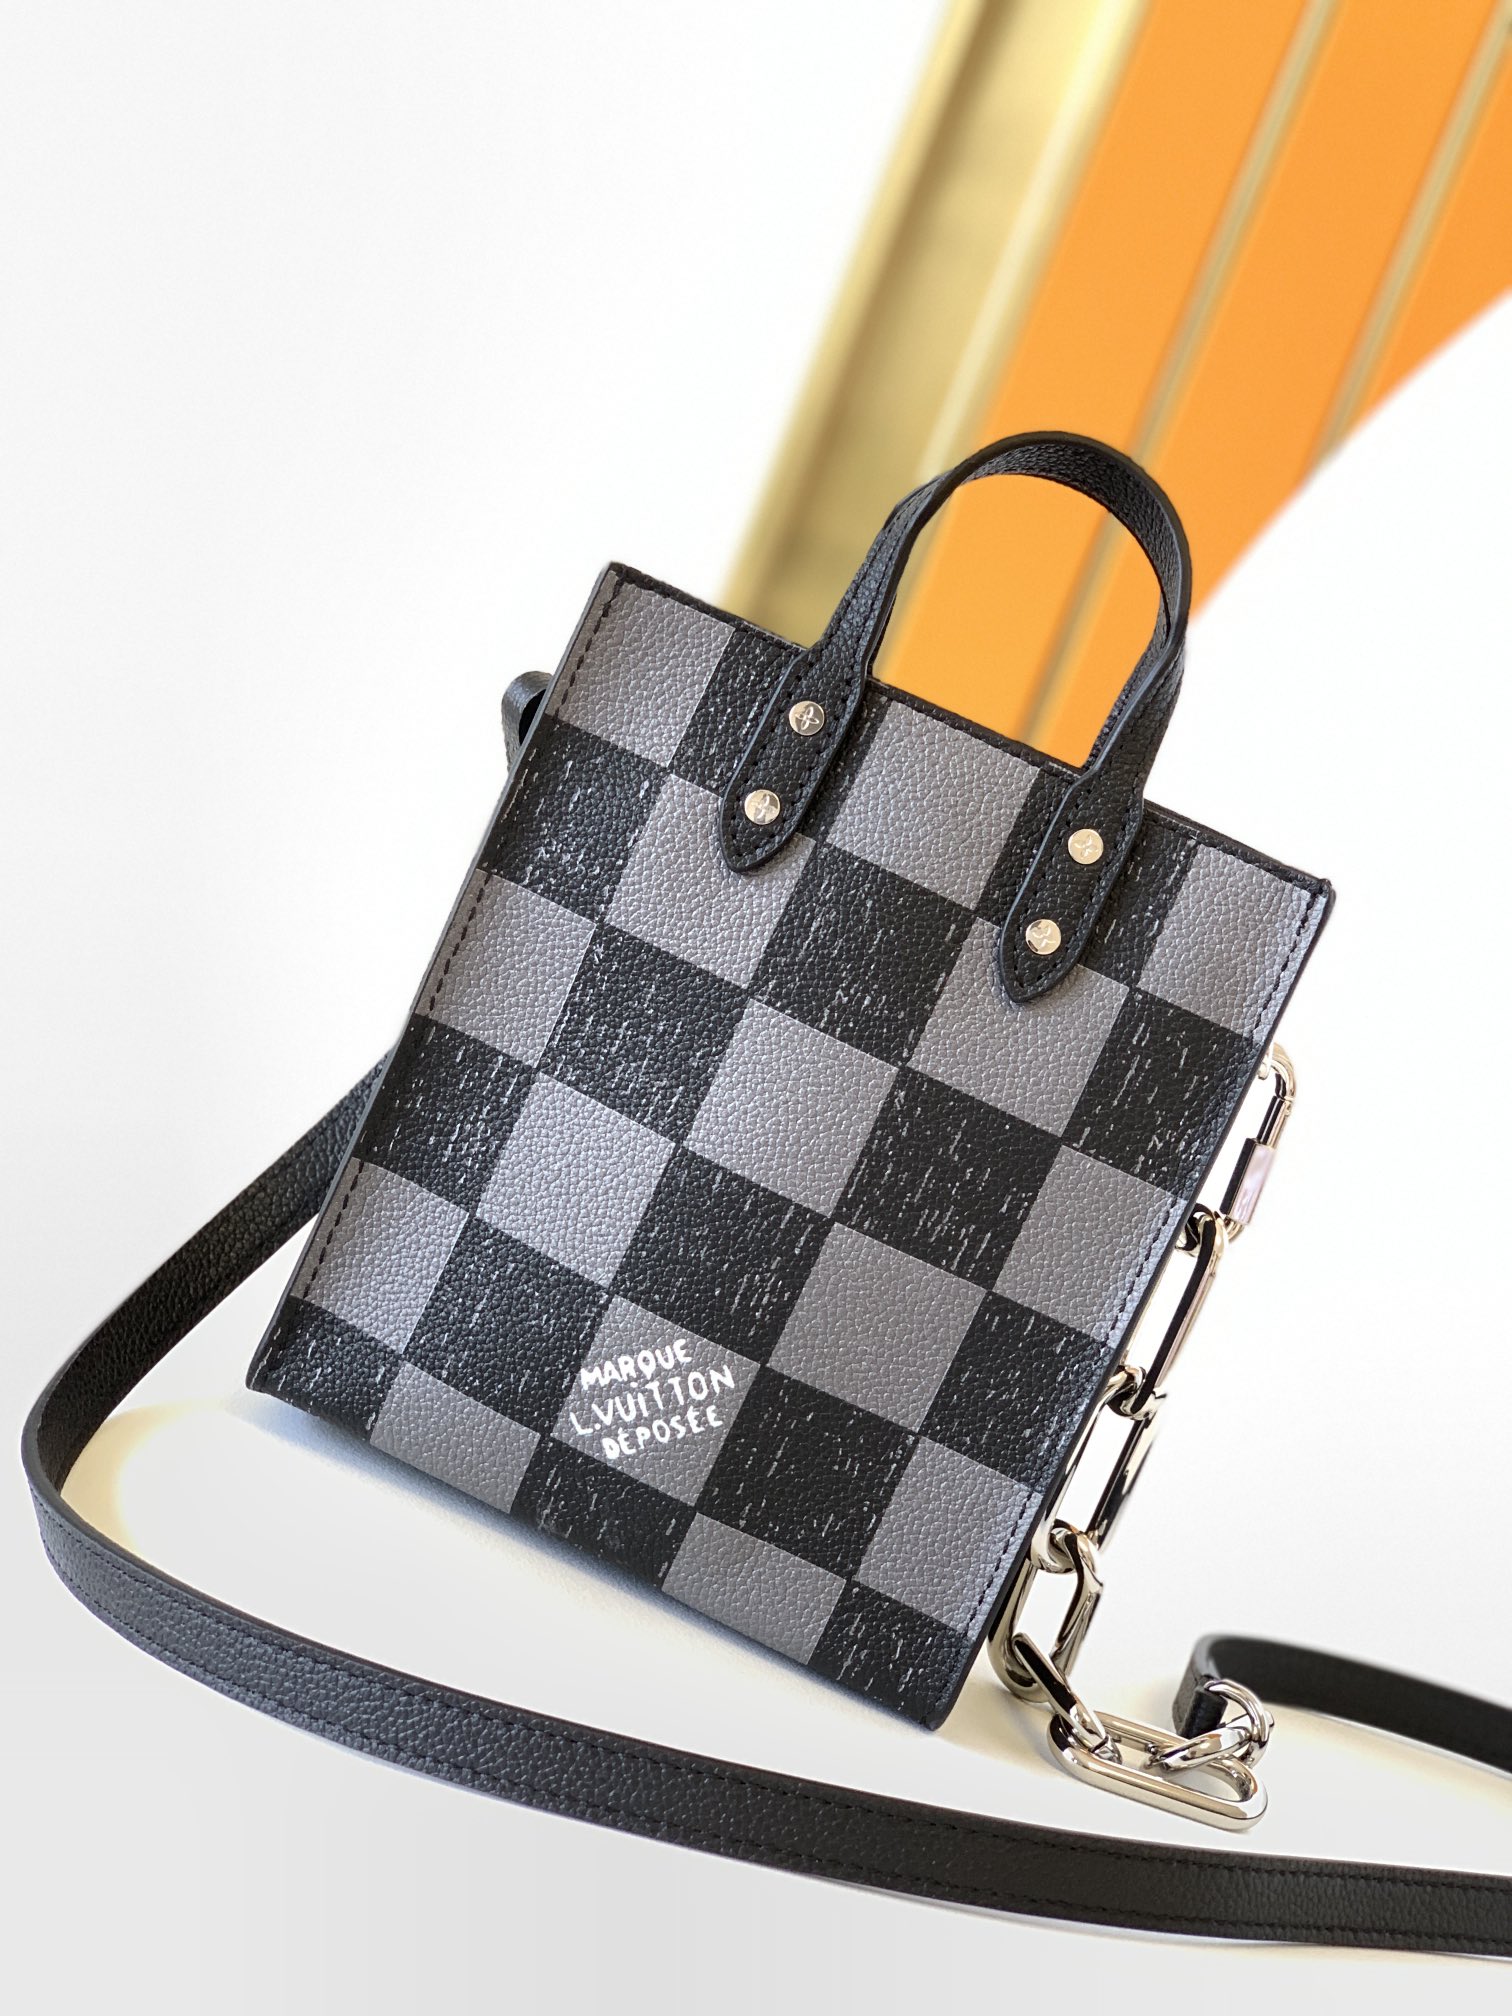 Shop Louis Vuitton Sac Plat Xs (N60495, N60479) by LESSISMORE☆